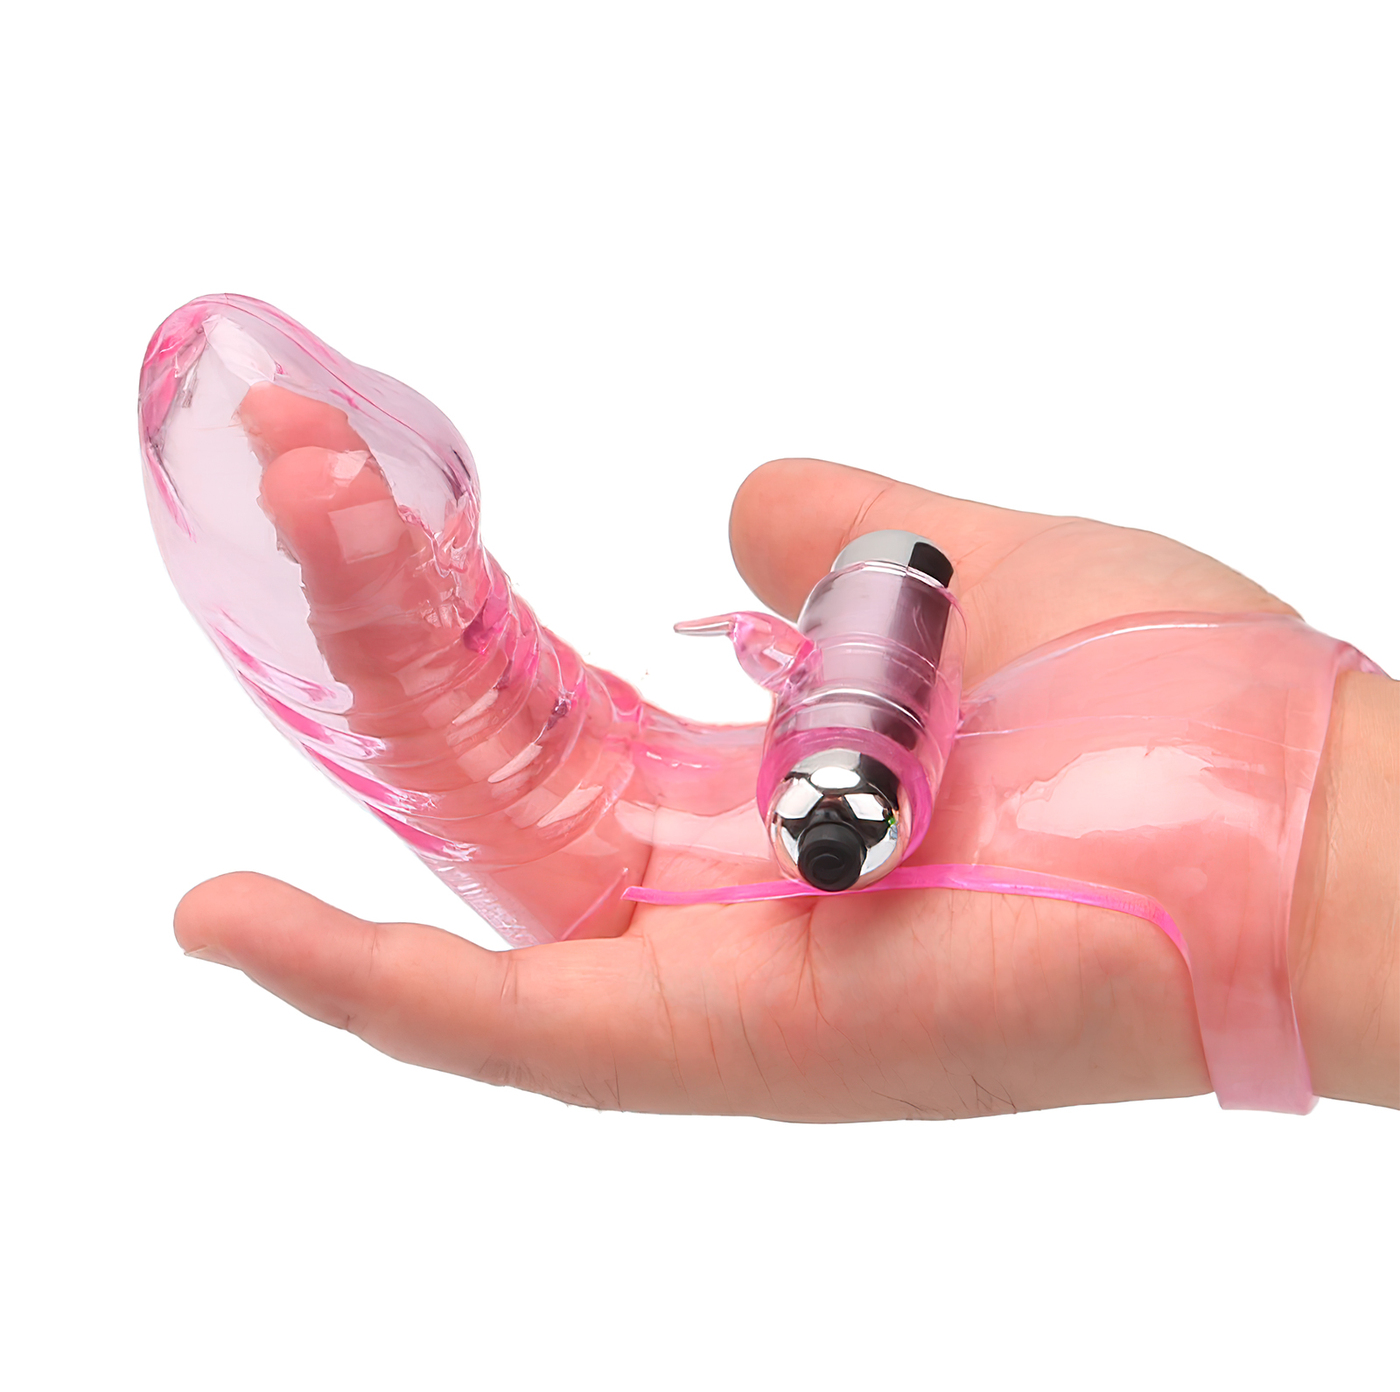 вибрирующая вагина для мастурбации фото 112